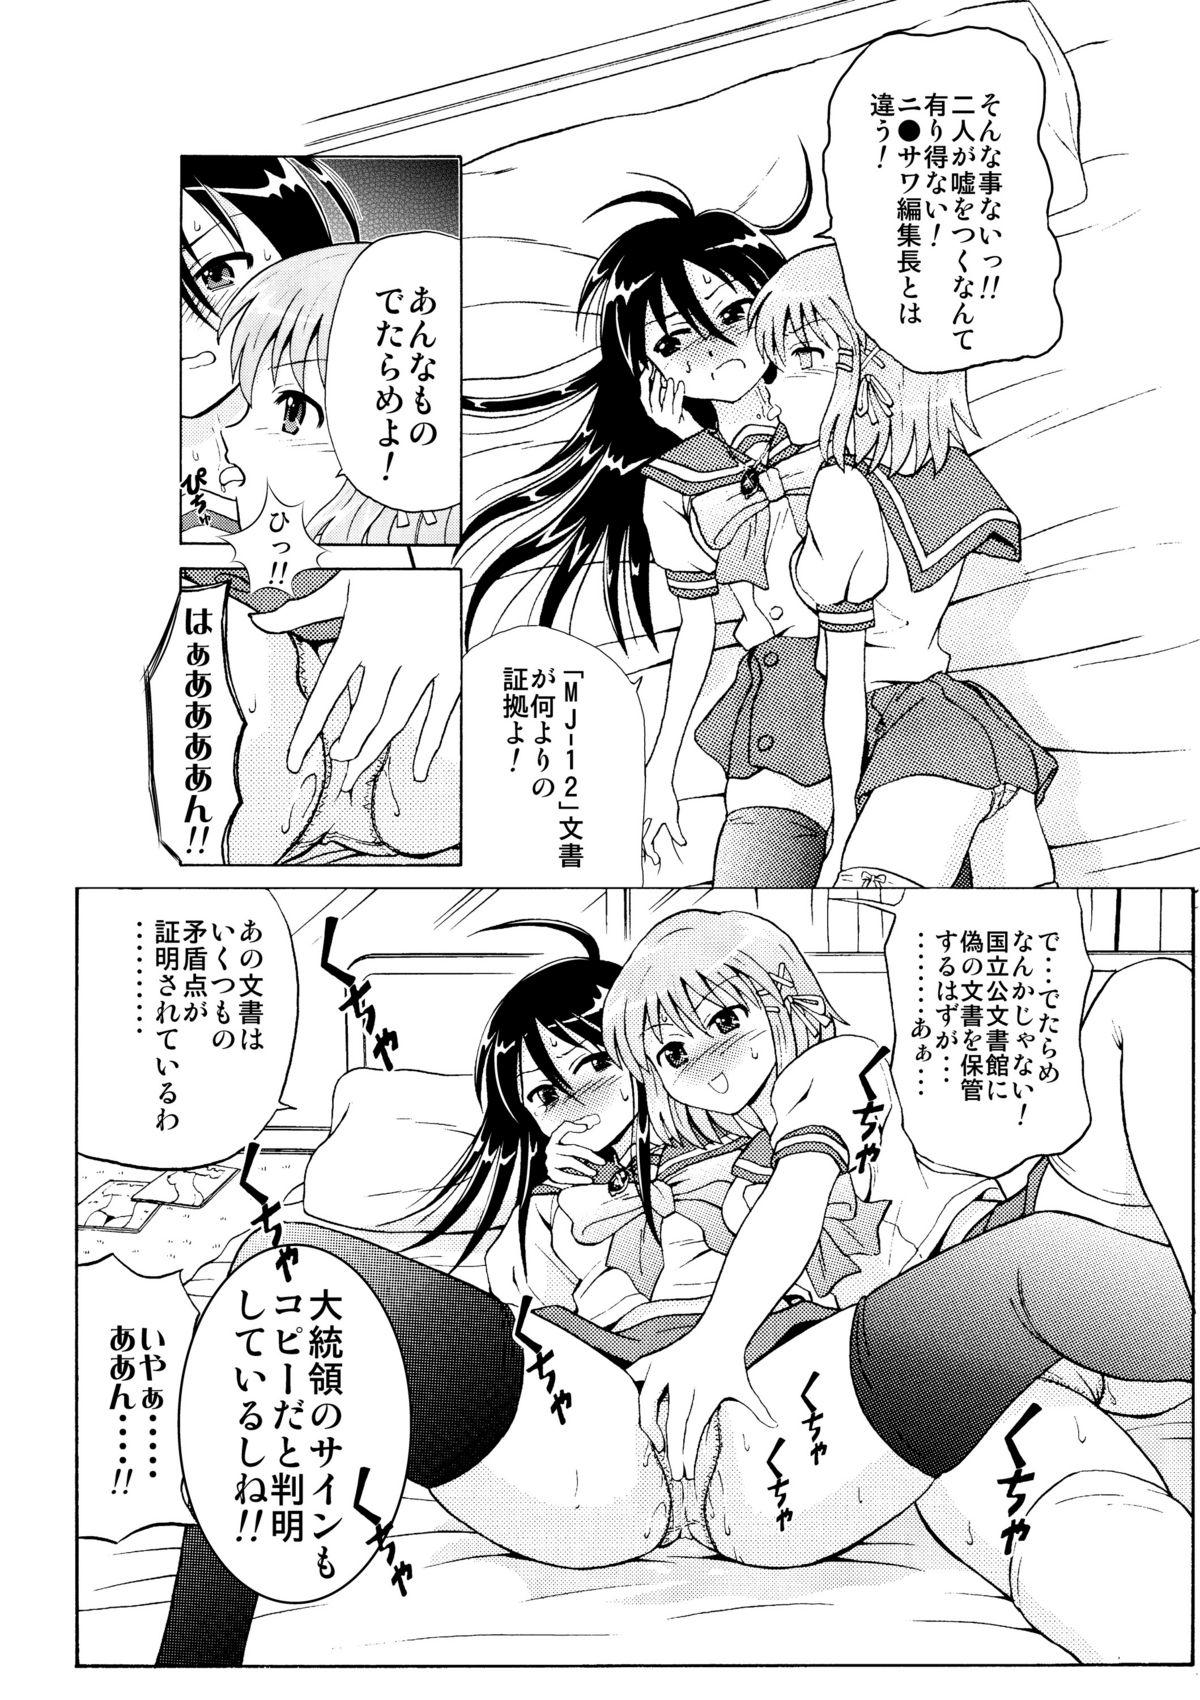 3some Shakugan VS Kyonyuuko ～ Arashi no Inu Genka Special ～ - Shakugan no shana Esposa - Page 4